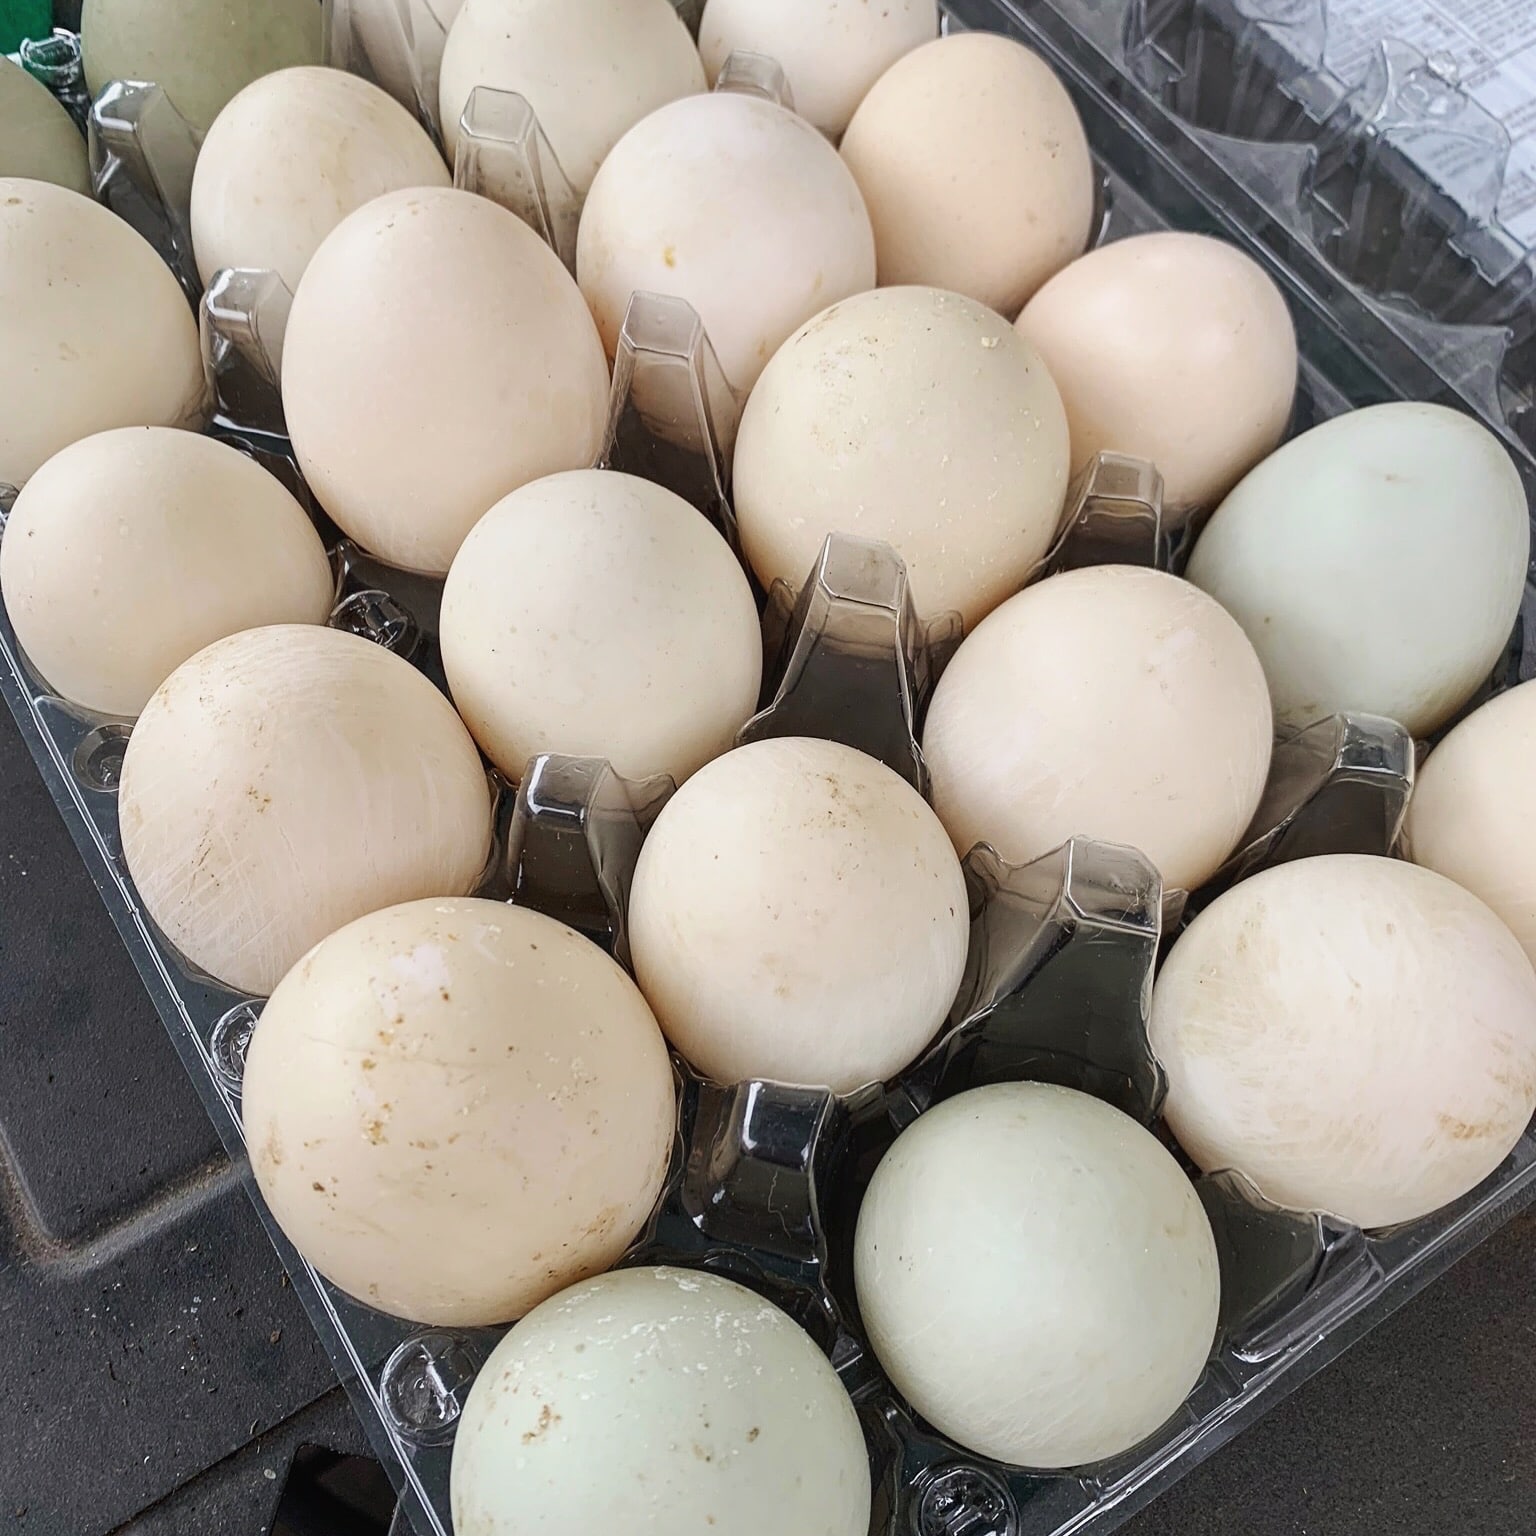 urban quack eggs